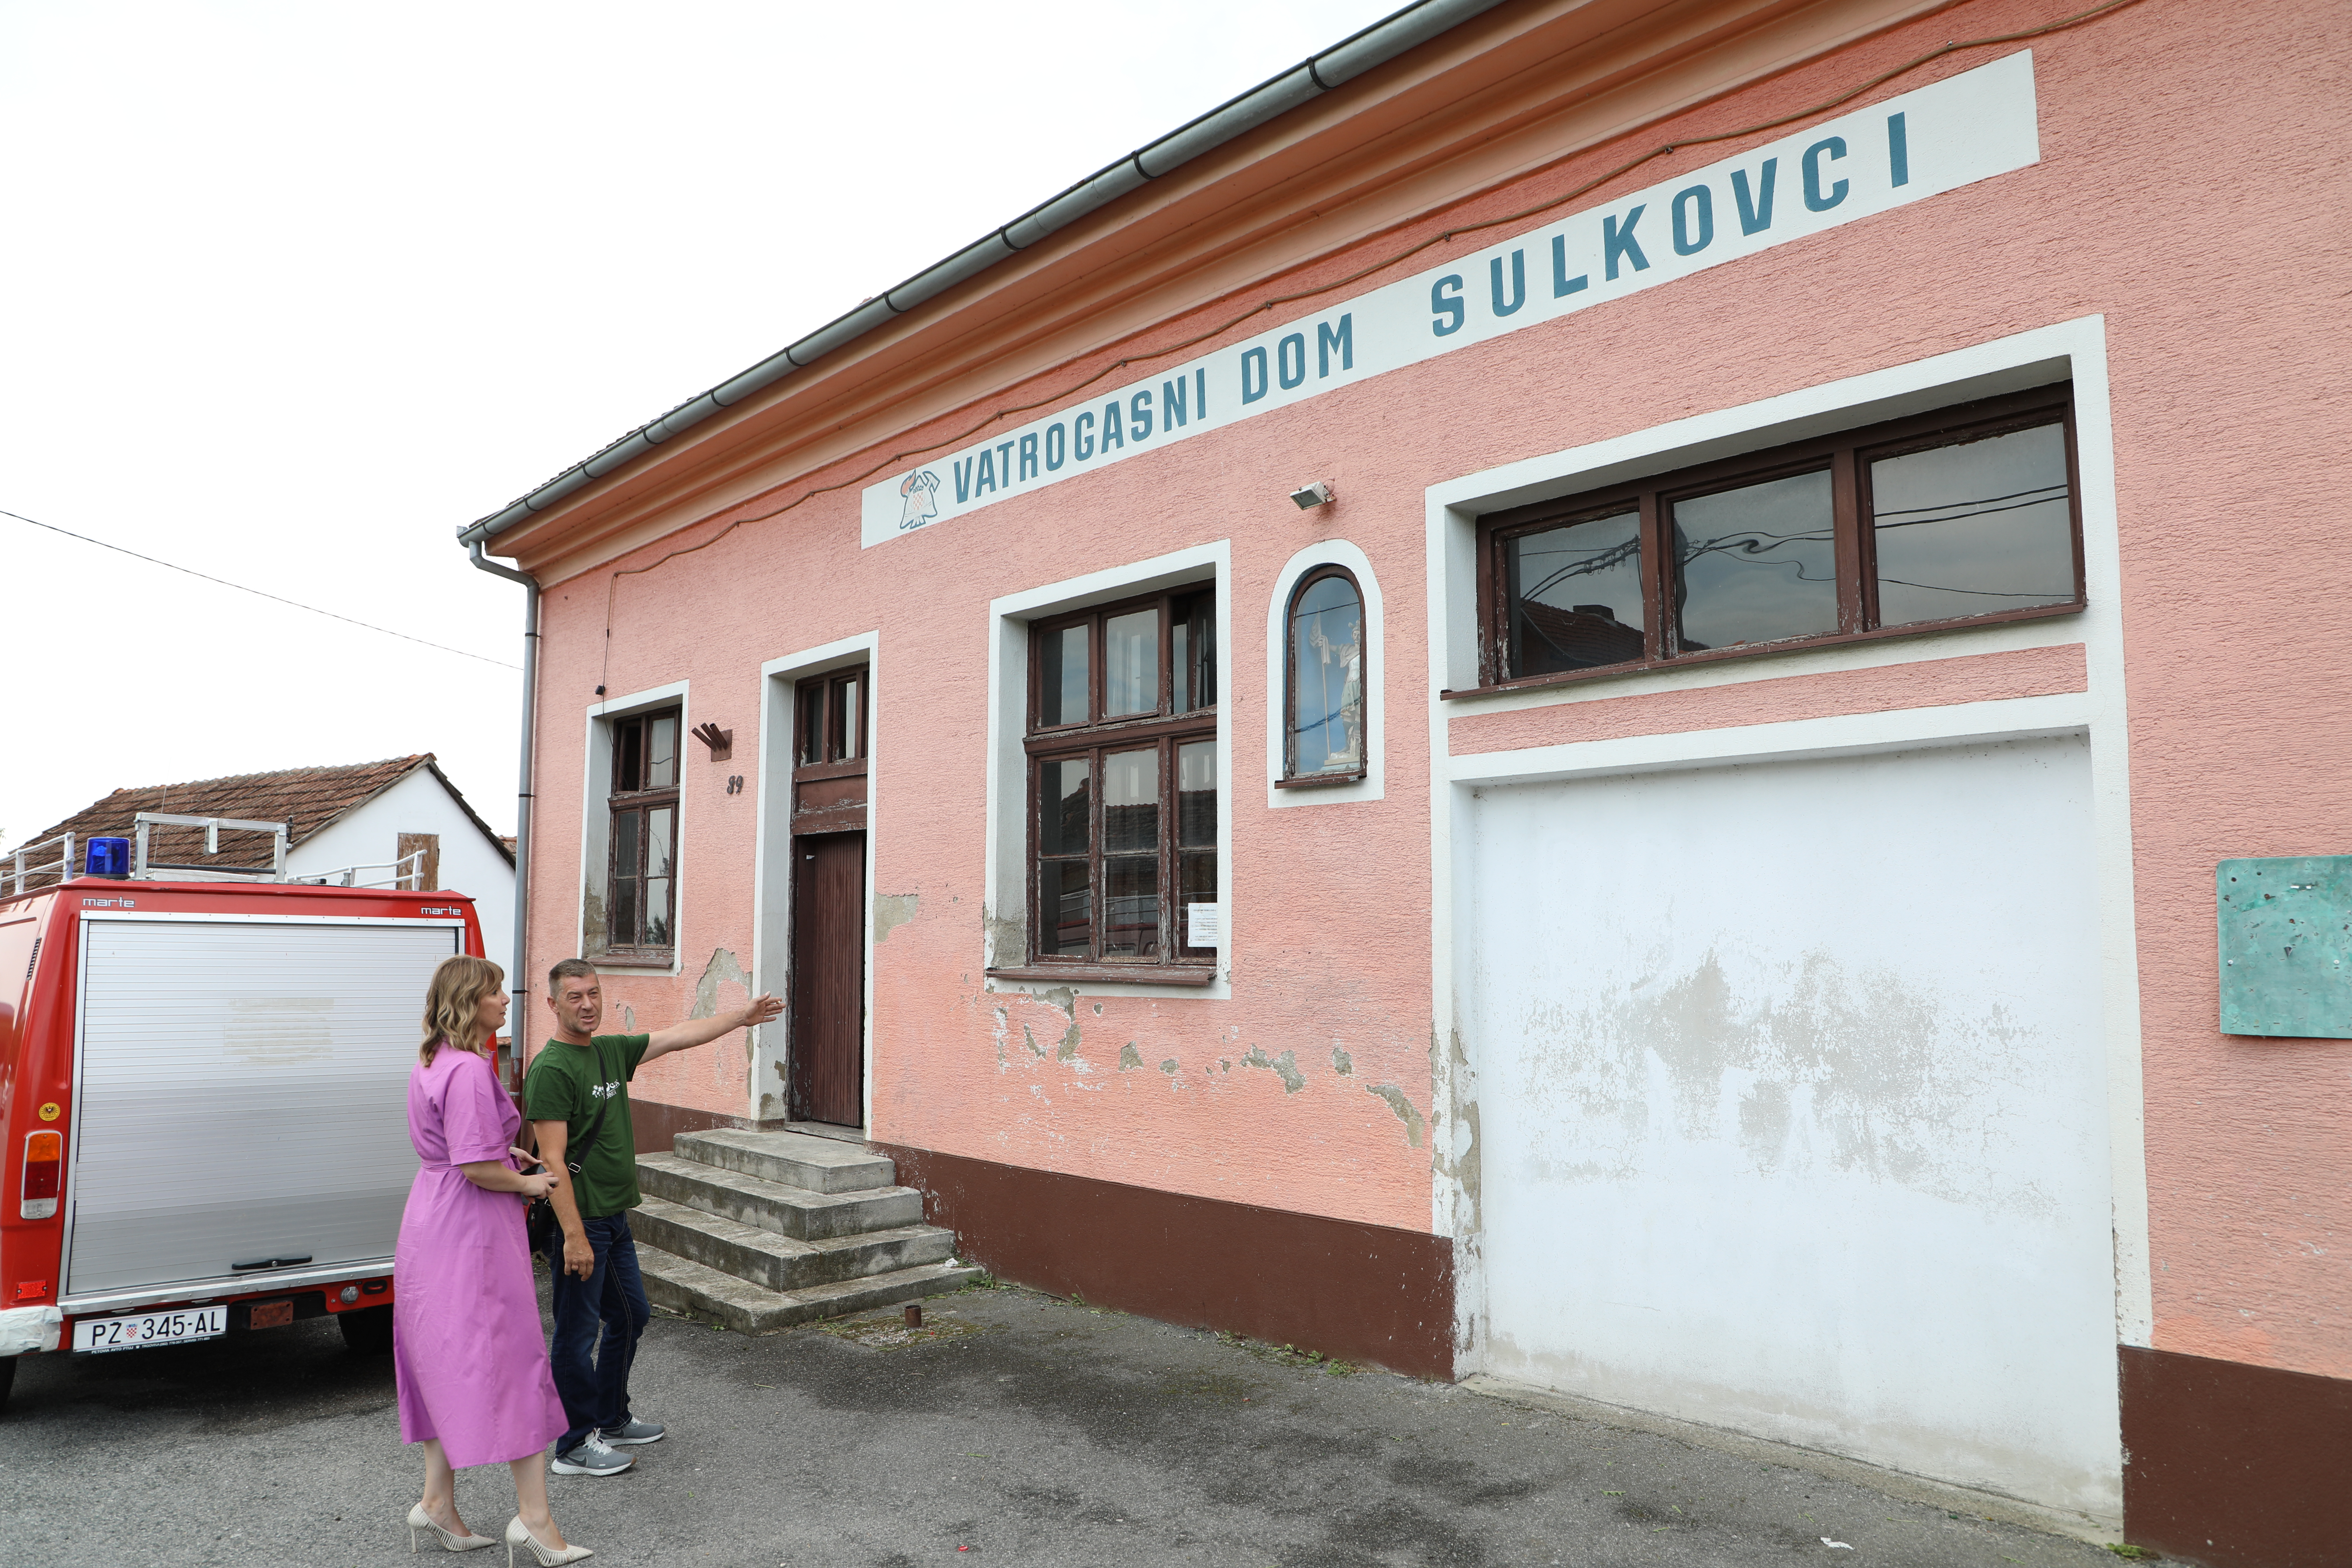 Kraj neugledne fasade: “EU sredstvima dajemo obol tradiciji vatrogastva u Sulkovcima”